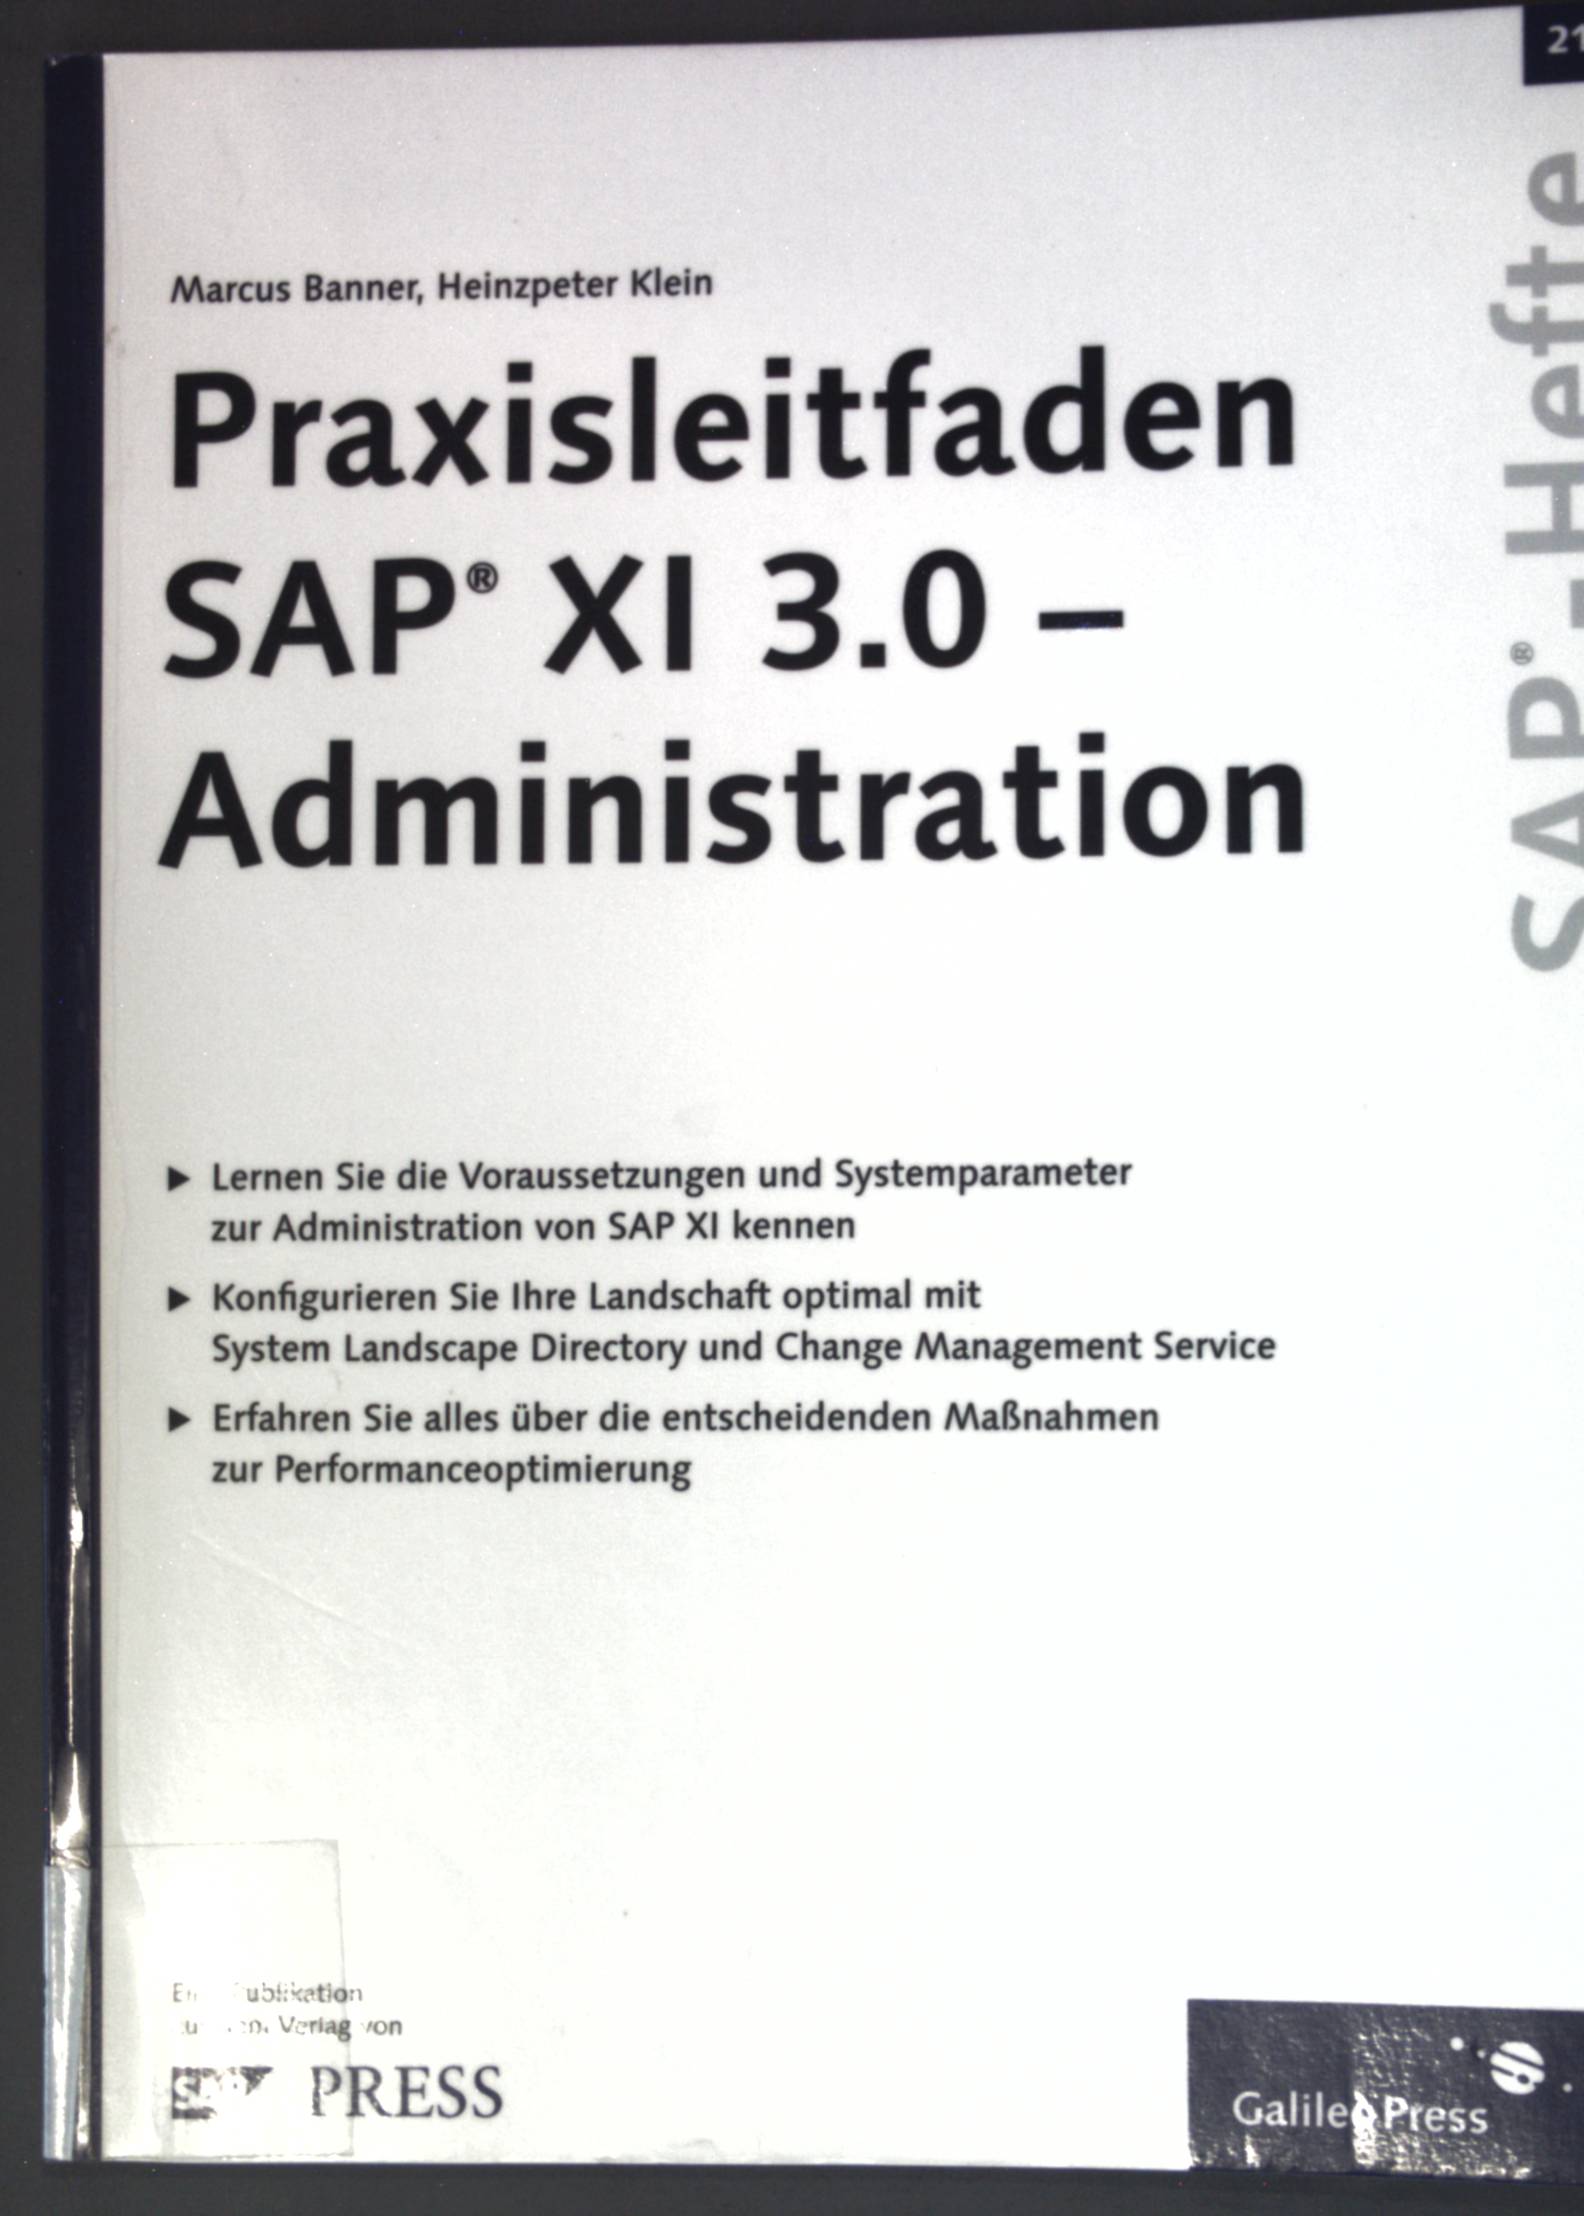 Praxisleitfaden SAP XI 3.0 - Administration; SAP-Heft 21; - Banner, Marcus und Heinzpeter Klein